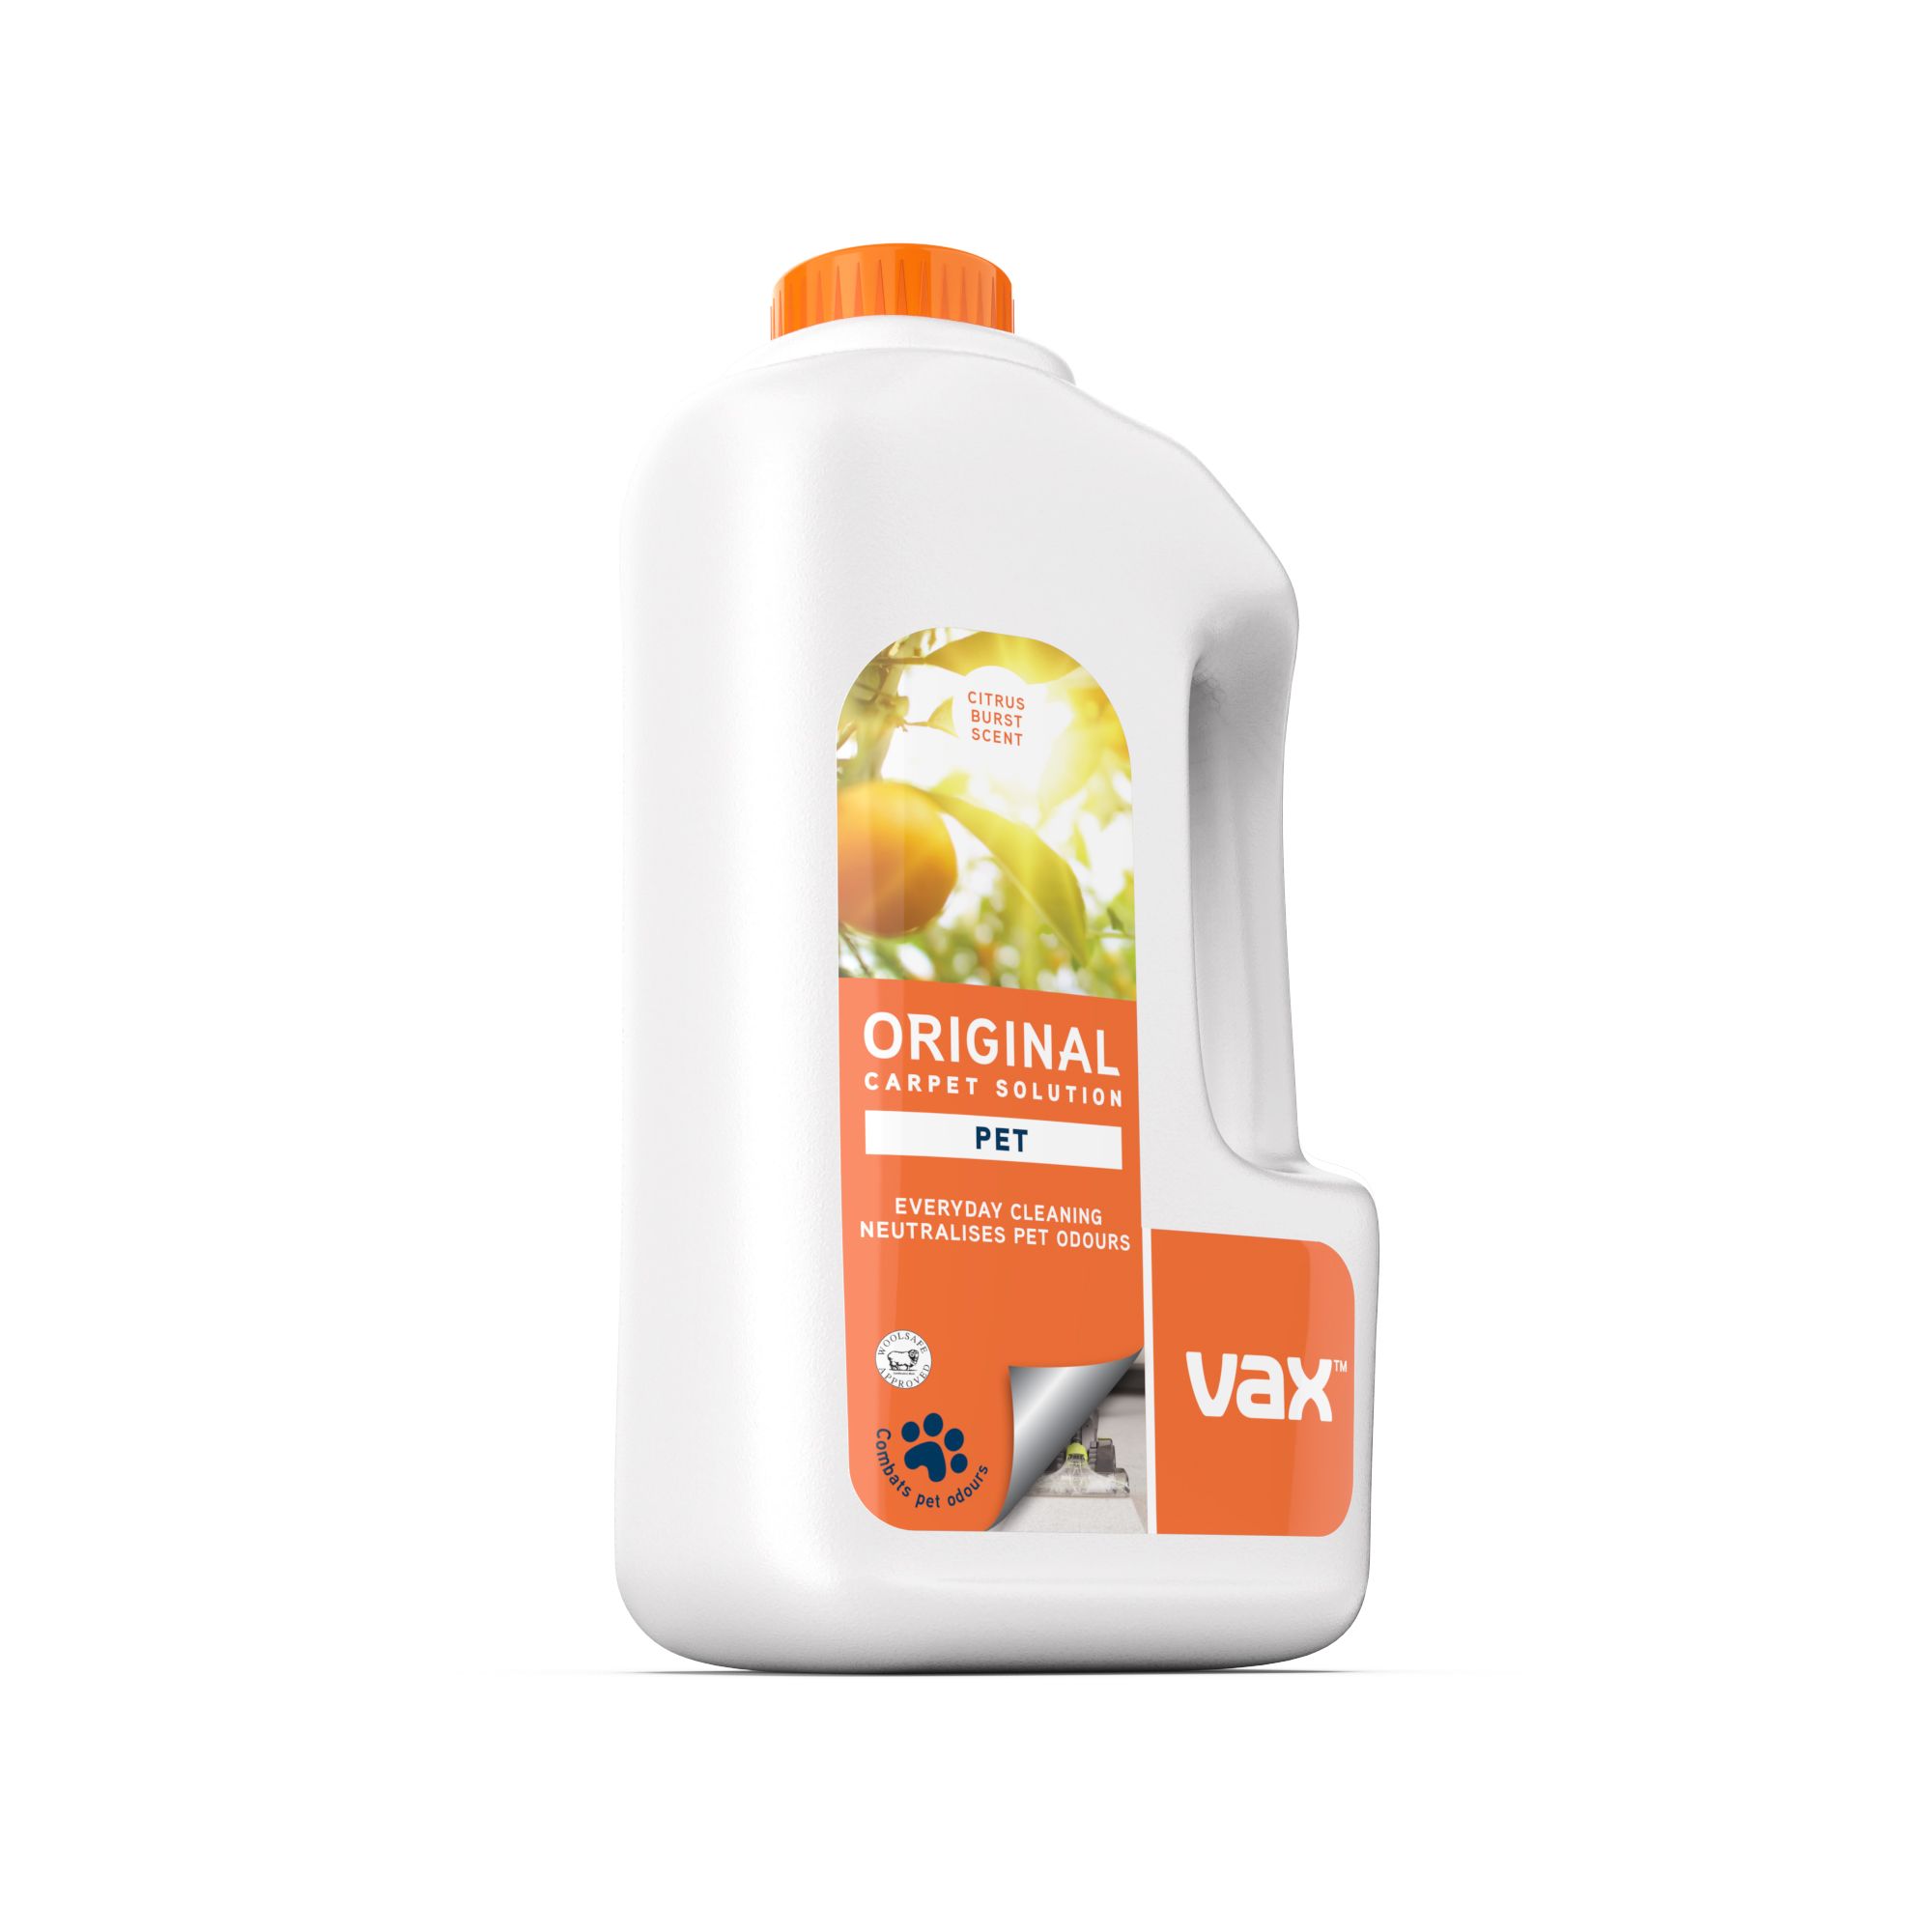 Vax Original Citrus Carpet cleaner, 1.5L